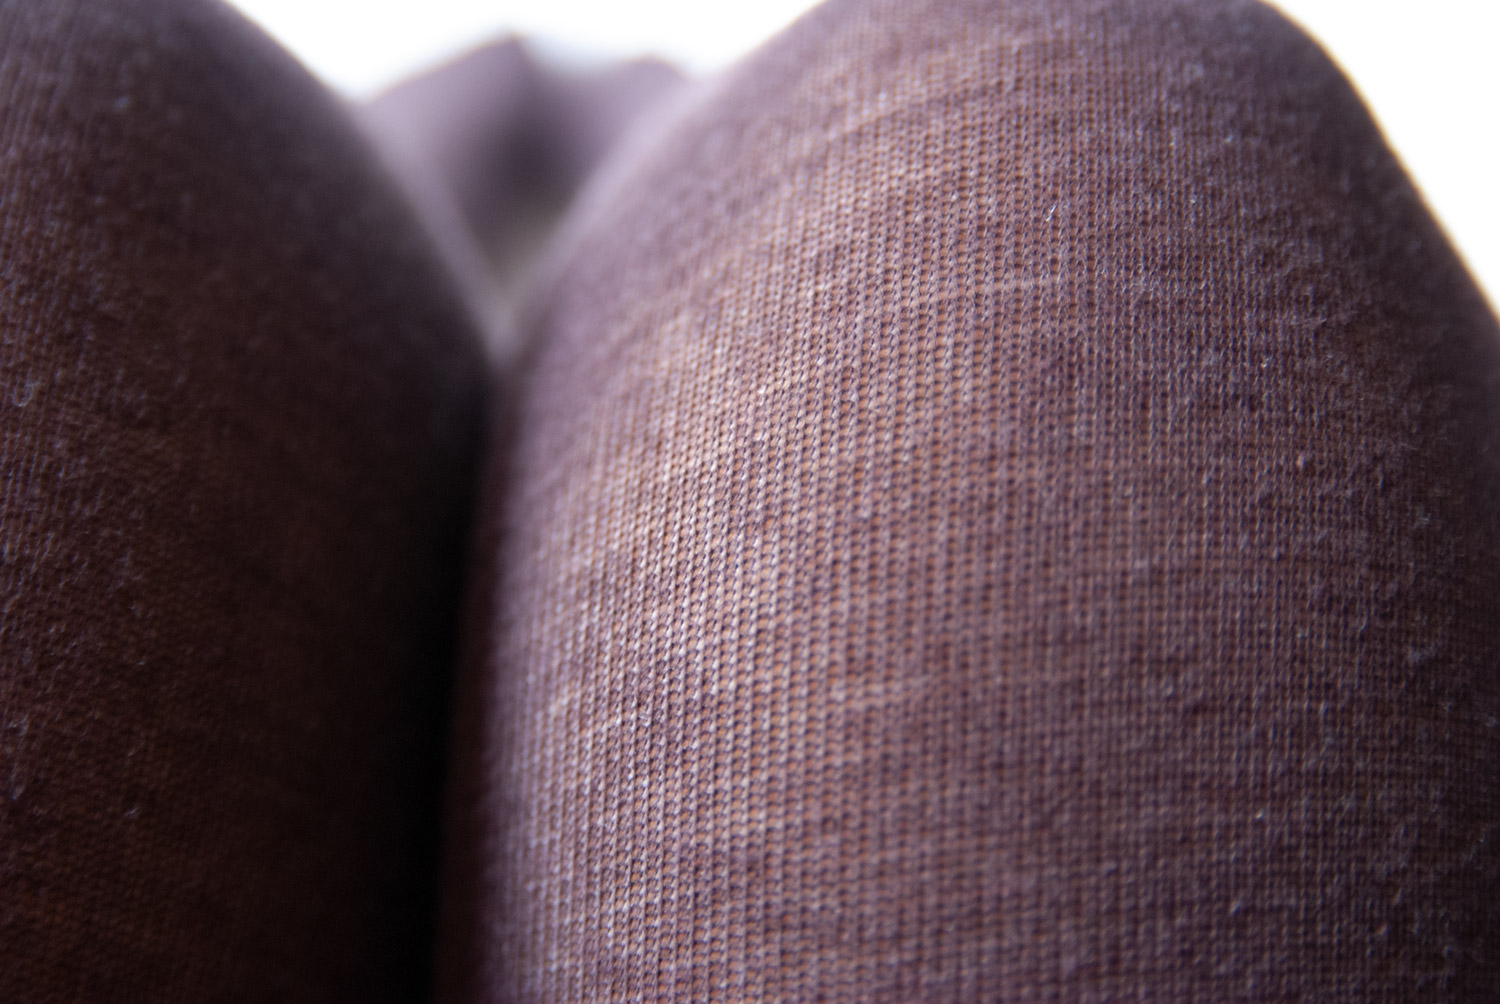 Тёплые колготки с хлопком и шерстью MiNiMi Cotton&Wool, оттенок moka (кофейный) ©bracatus.com